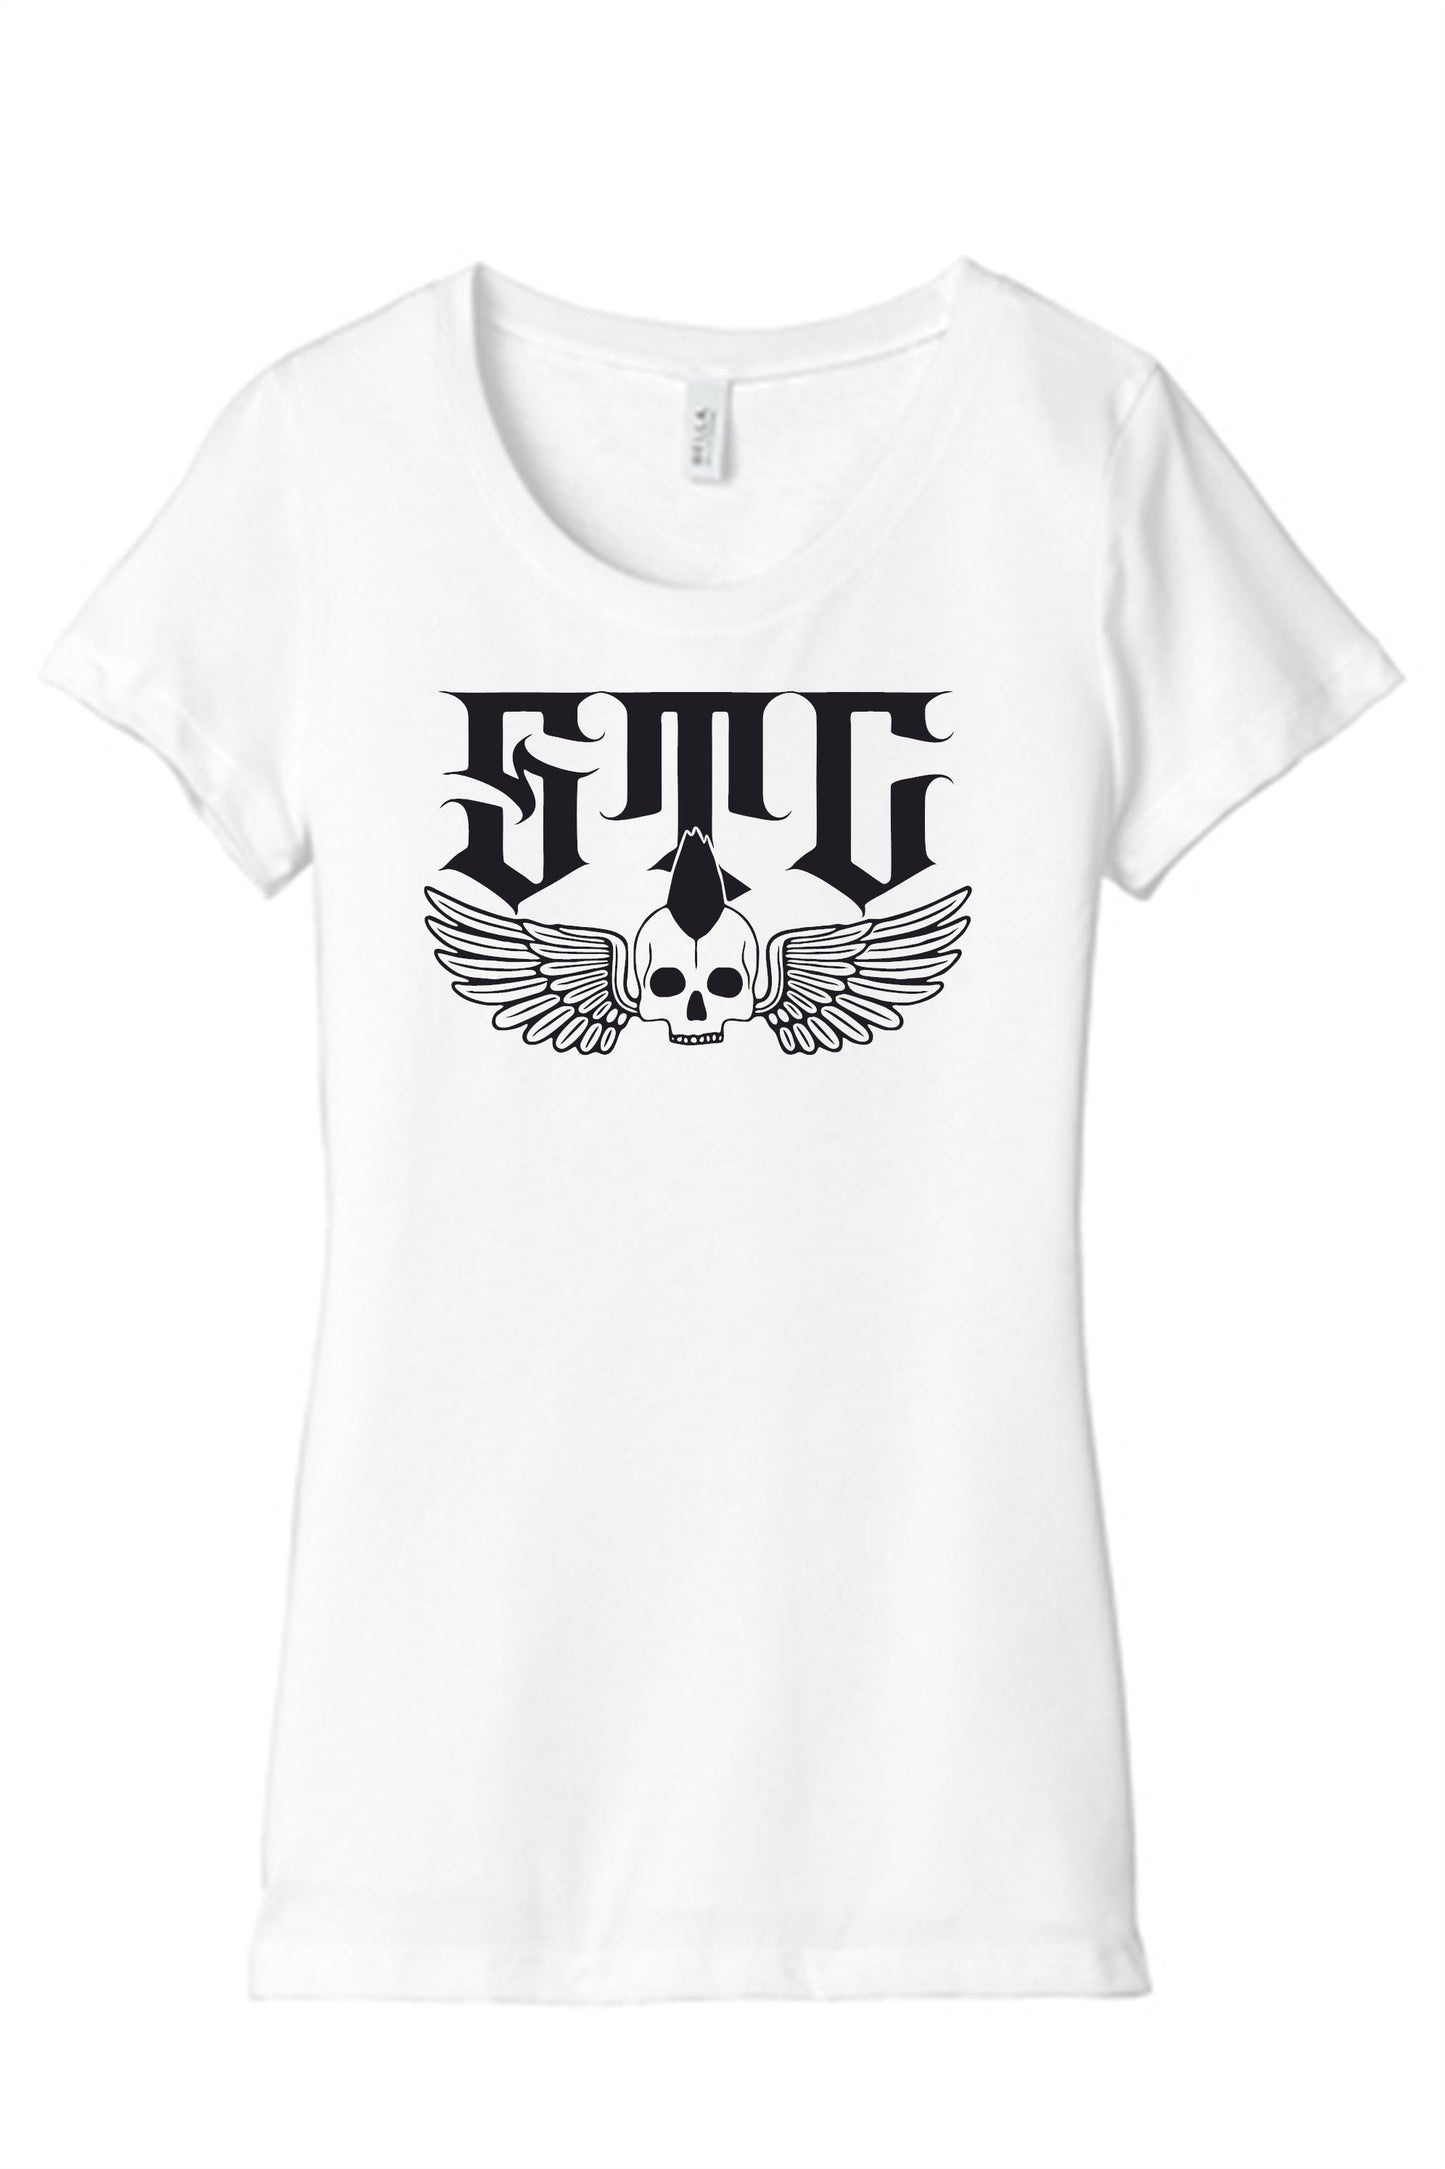 STC Winged Skull Women's T-Shirt